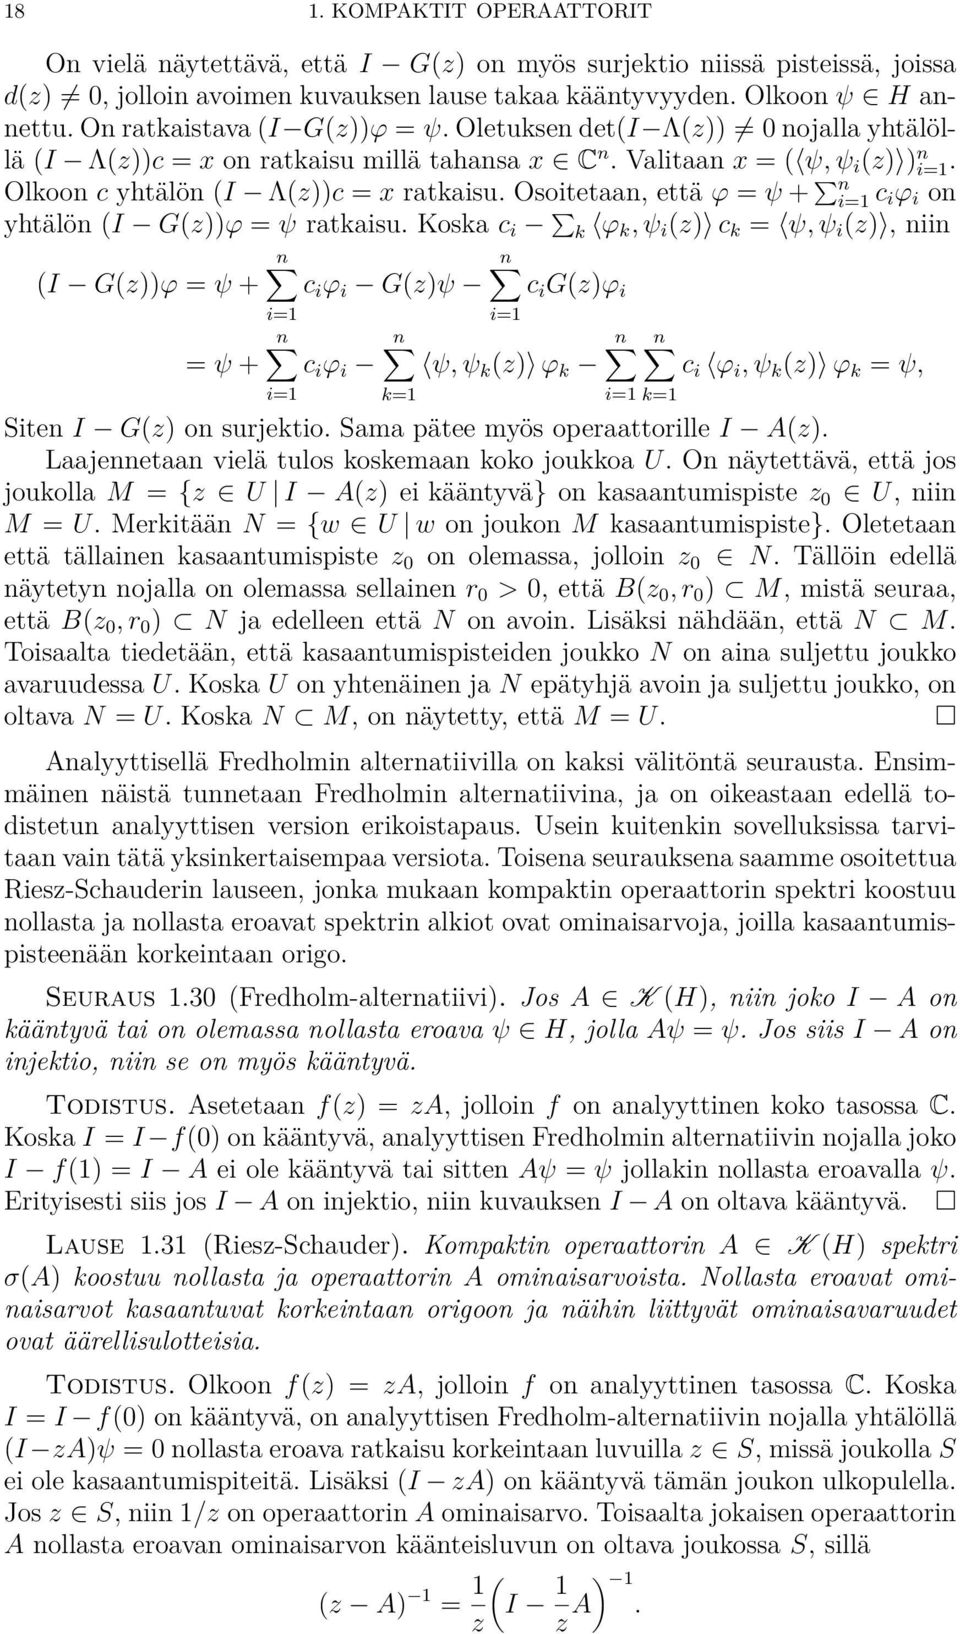 Osoitetaan, että Ï = Â + q n c i Ï i on yhtälön (I G(z))Ï = Â ratkaisu.